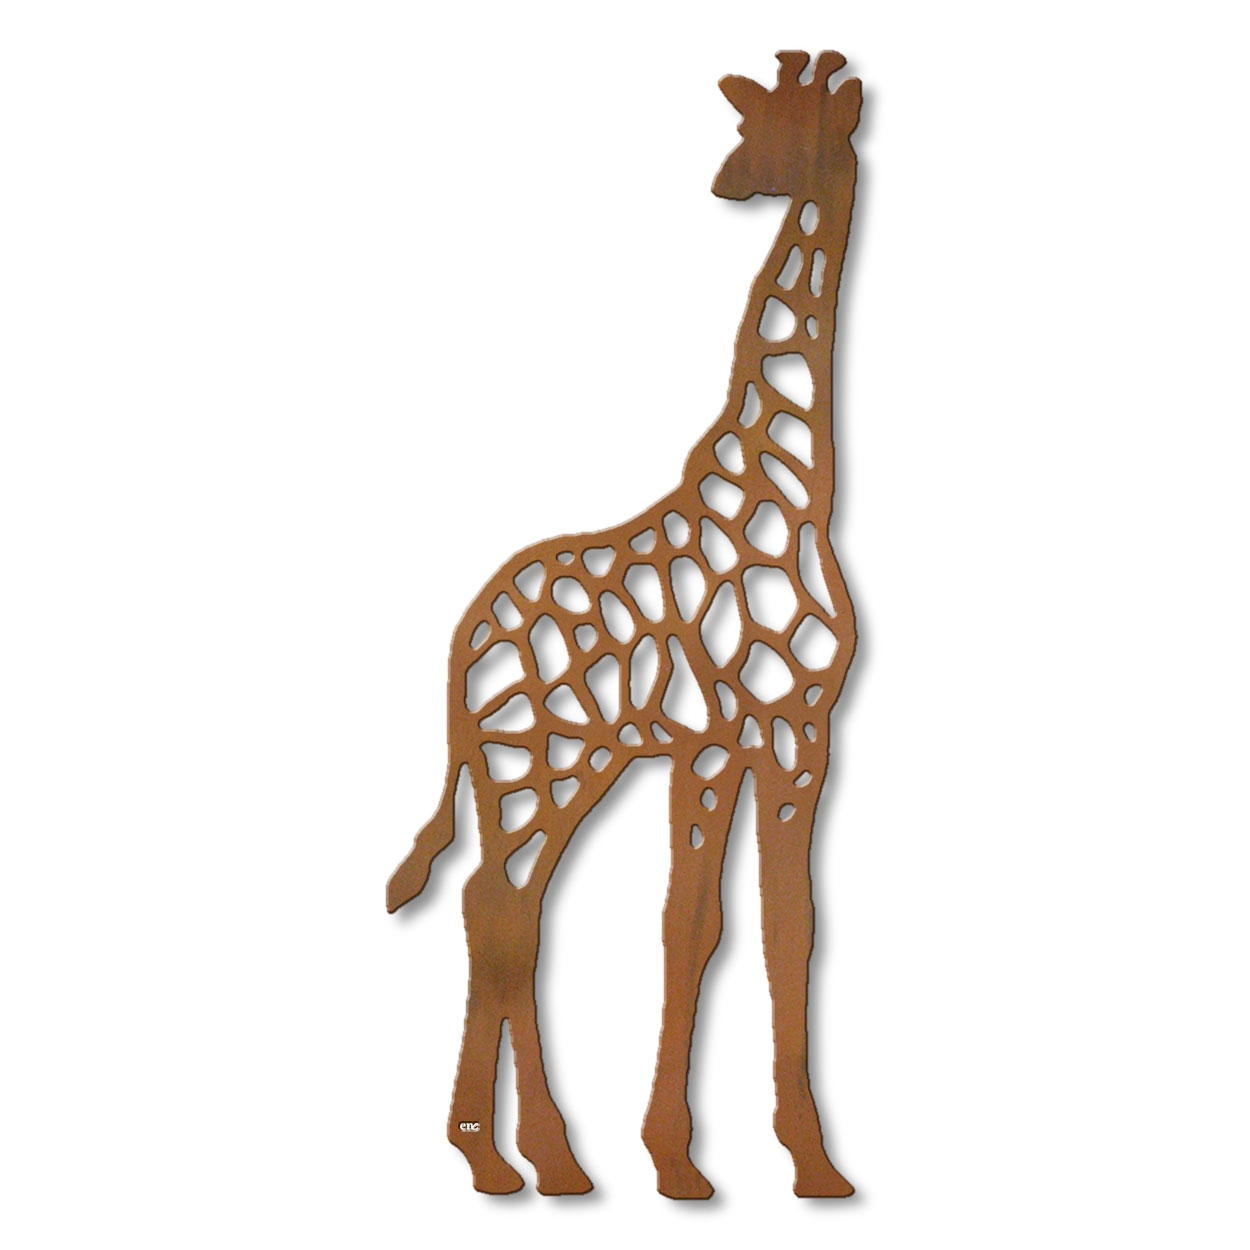 625425r - 18 or 24in Metal Wall Art - Giraffe - Rust Patina